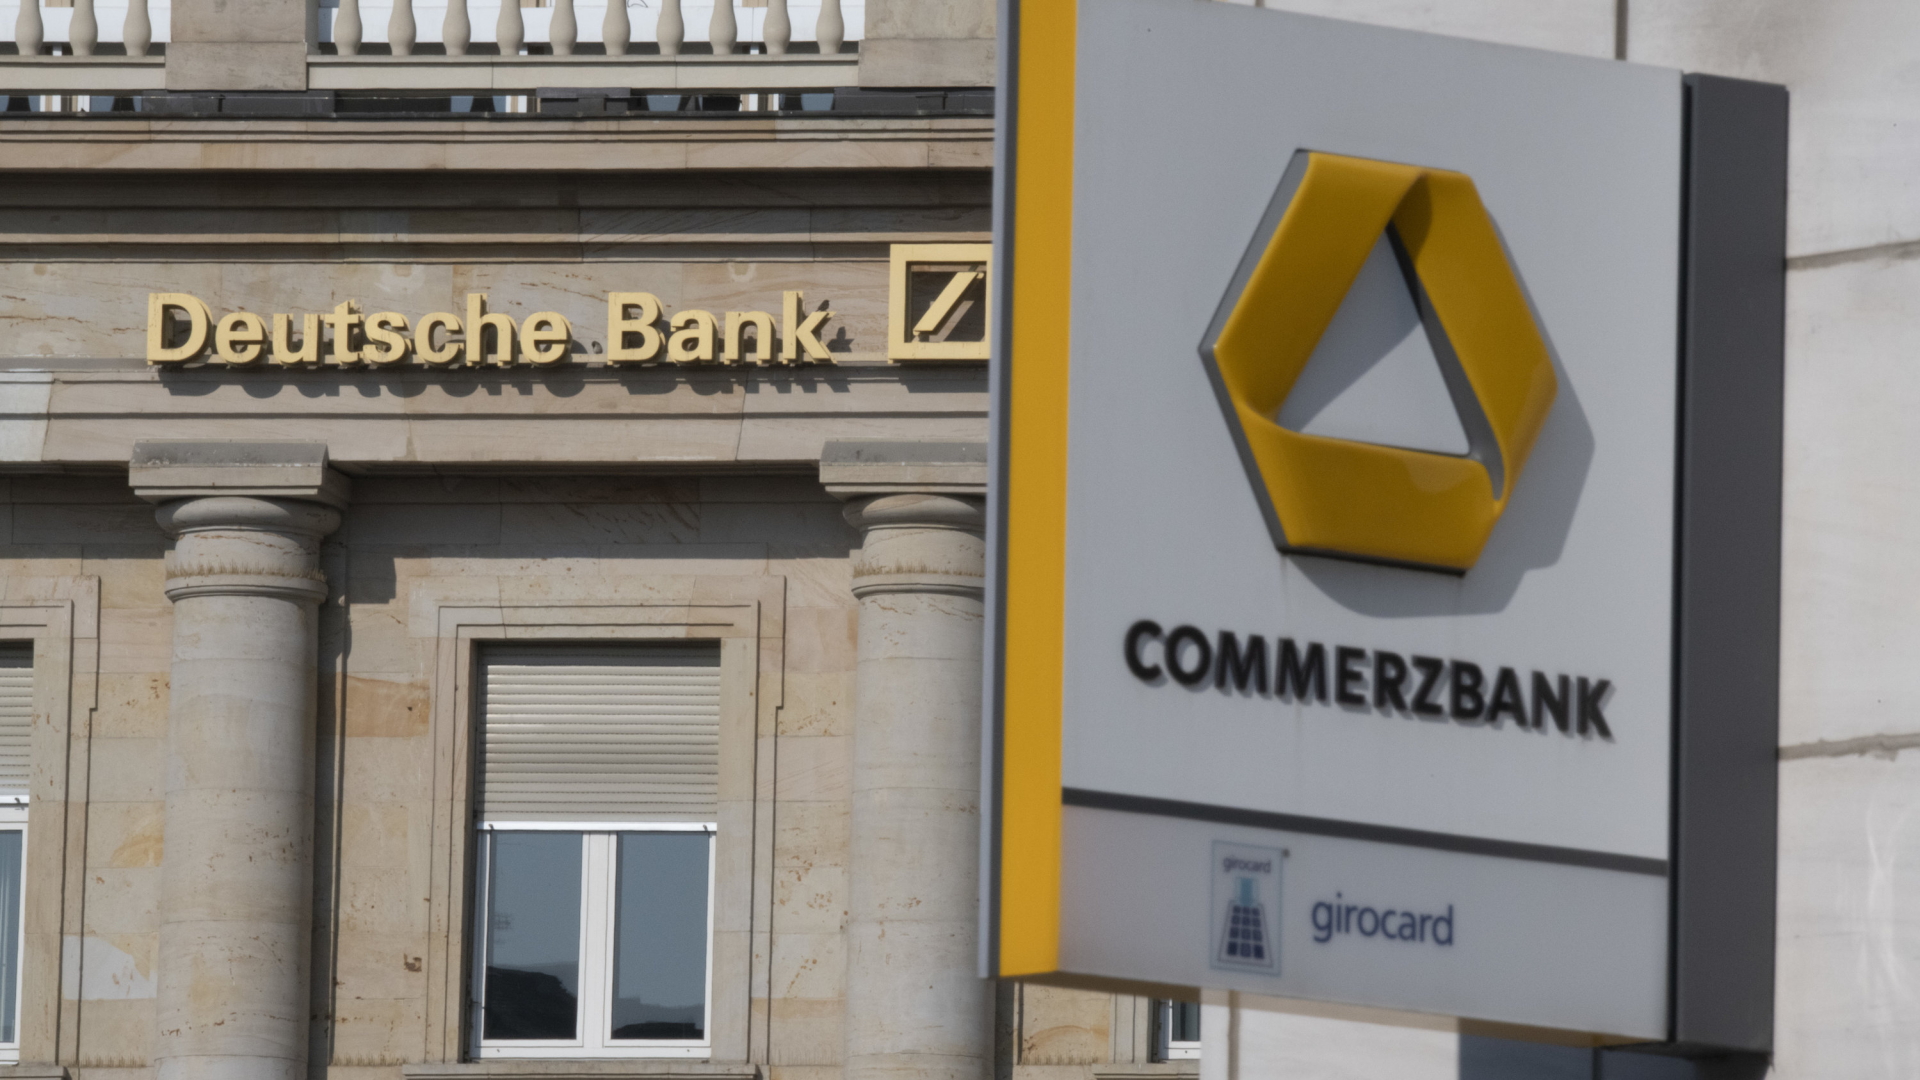 Der Schriftzug Deutsche Bank neben dem Logo iost auf einer Hauswand zu lesen, im Vordergrund ein Schild mit der Commerzbank mit Logo. | dpa